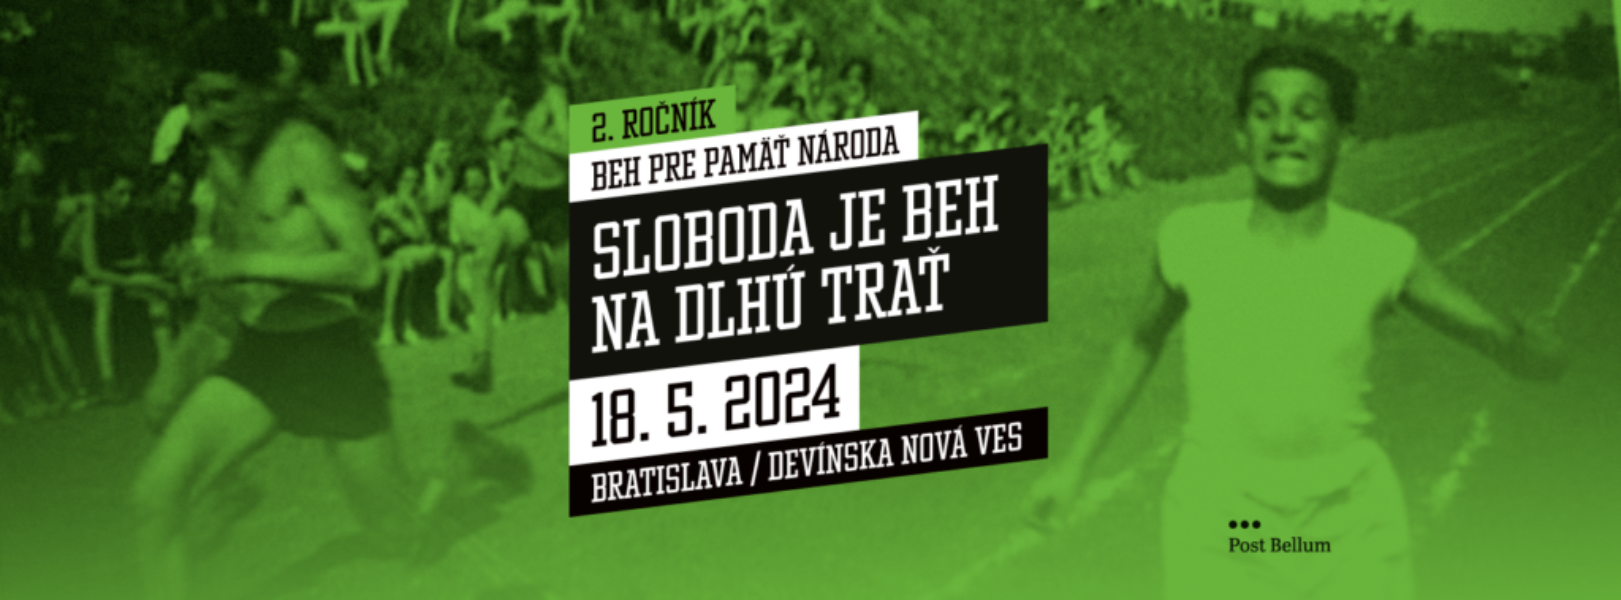 Beh pre pamäť národa: BSK a Juraj Droba podporujú podujatie na podporu pamätníkov 20. storočia